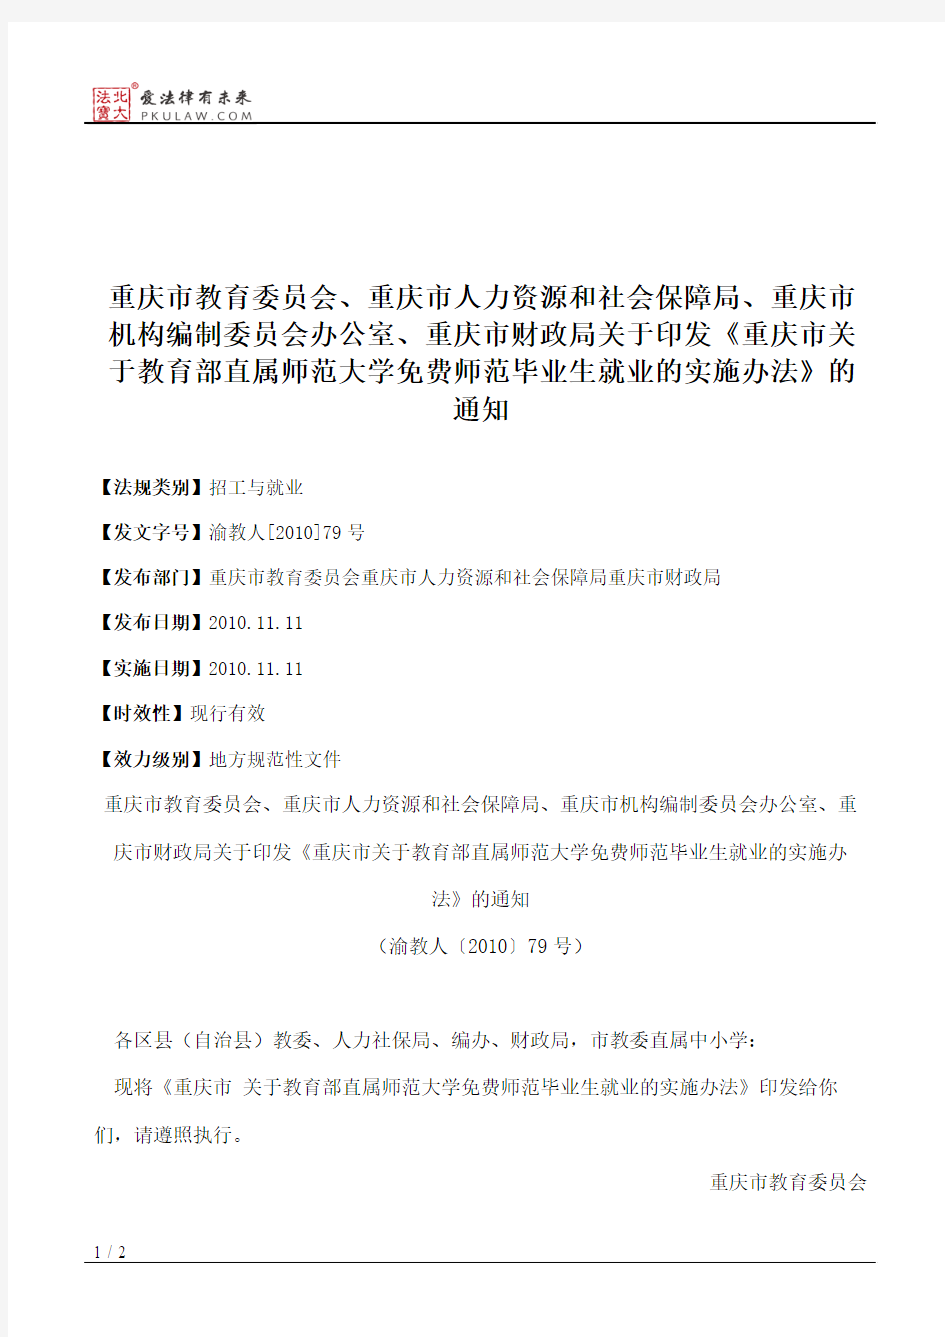 重庆市教育委员会、重庆市人力资源和社会保障局、重庆市机构编制